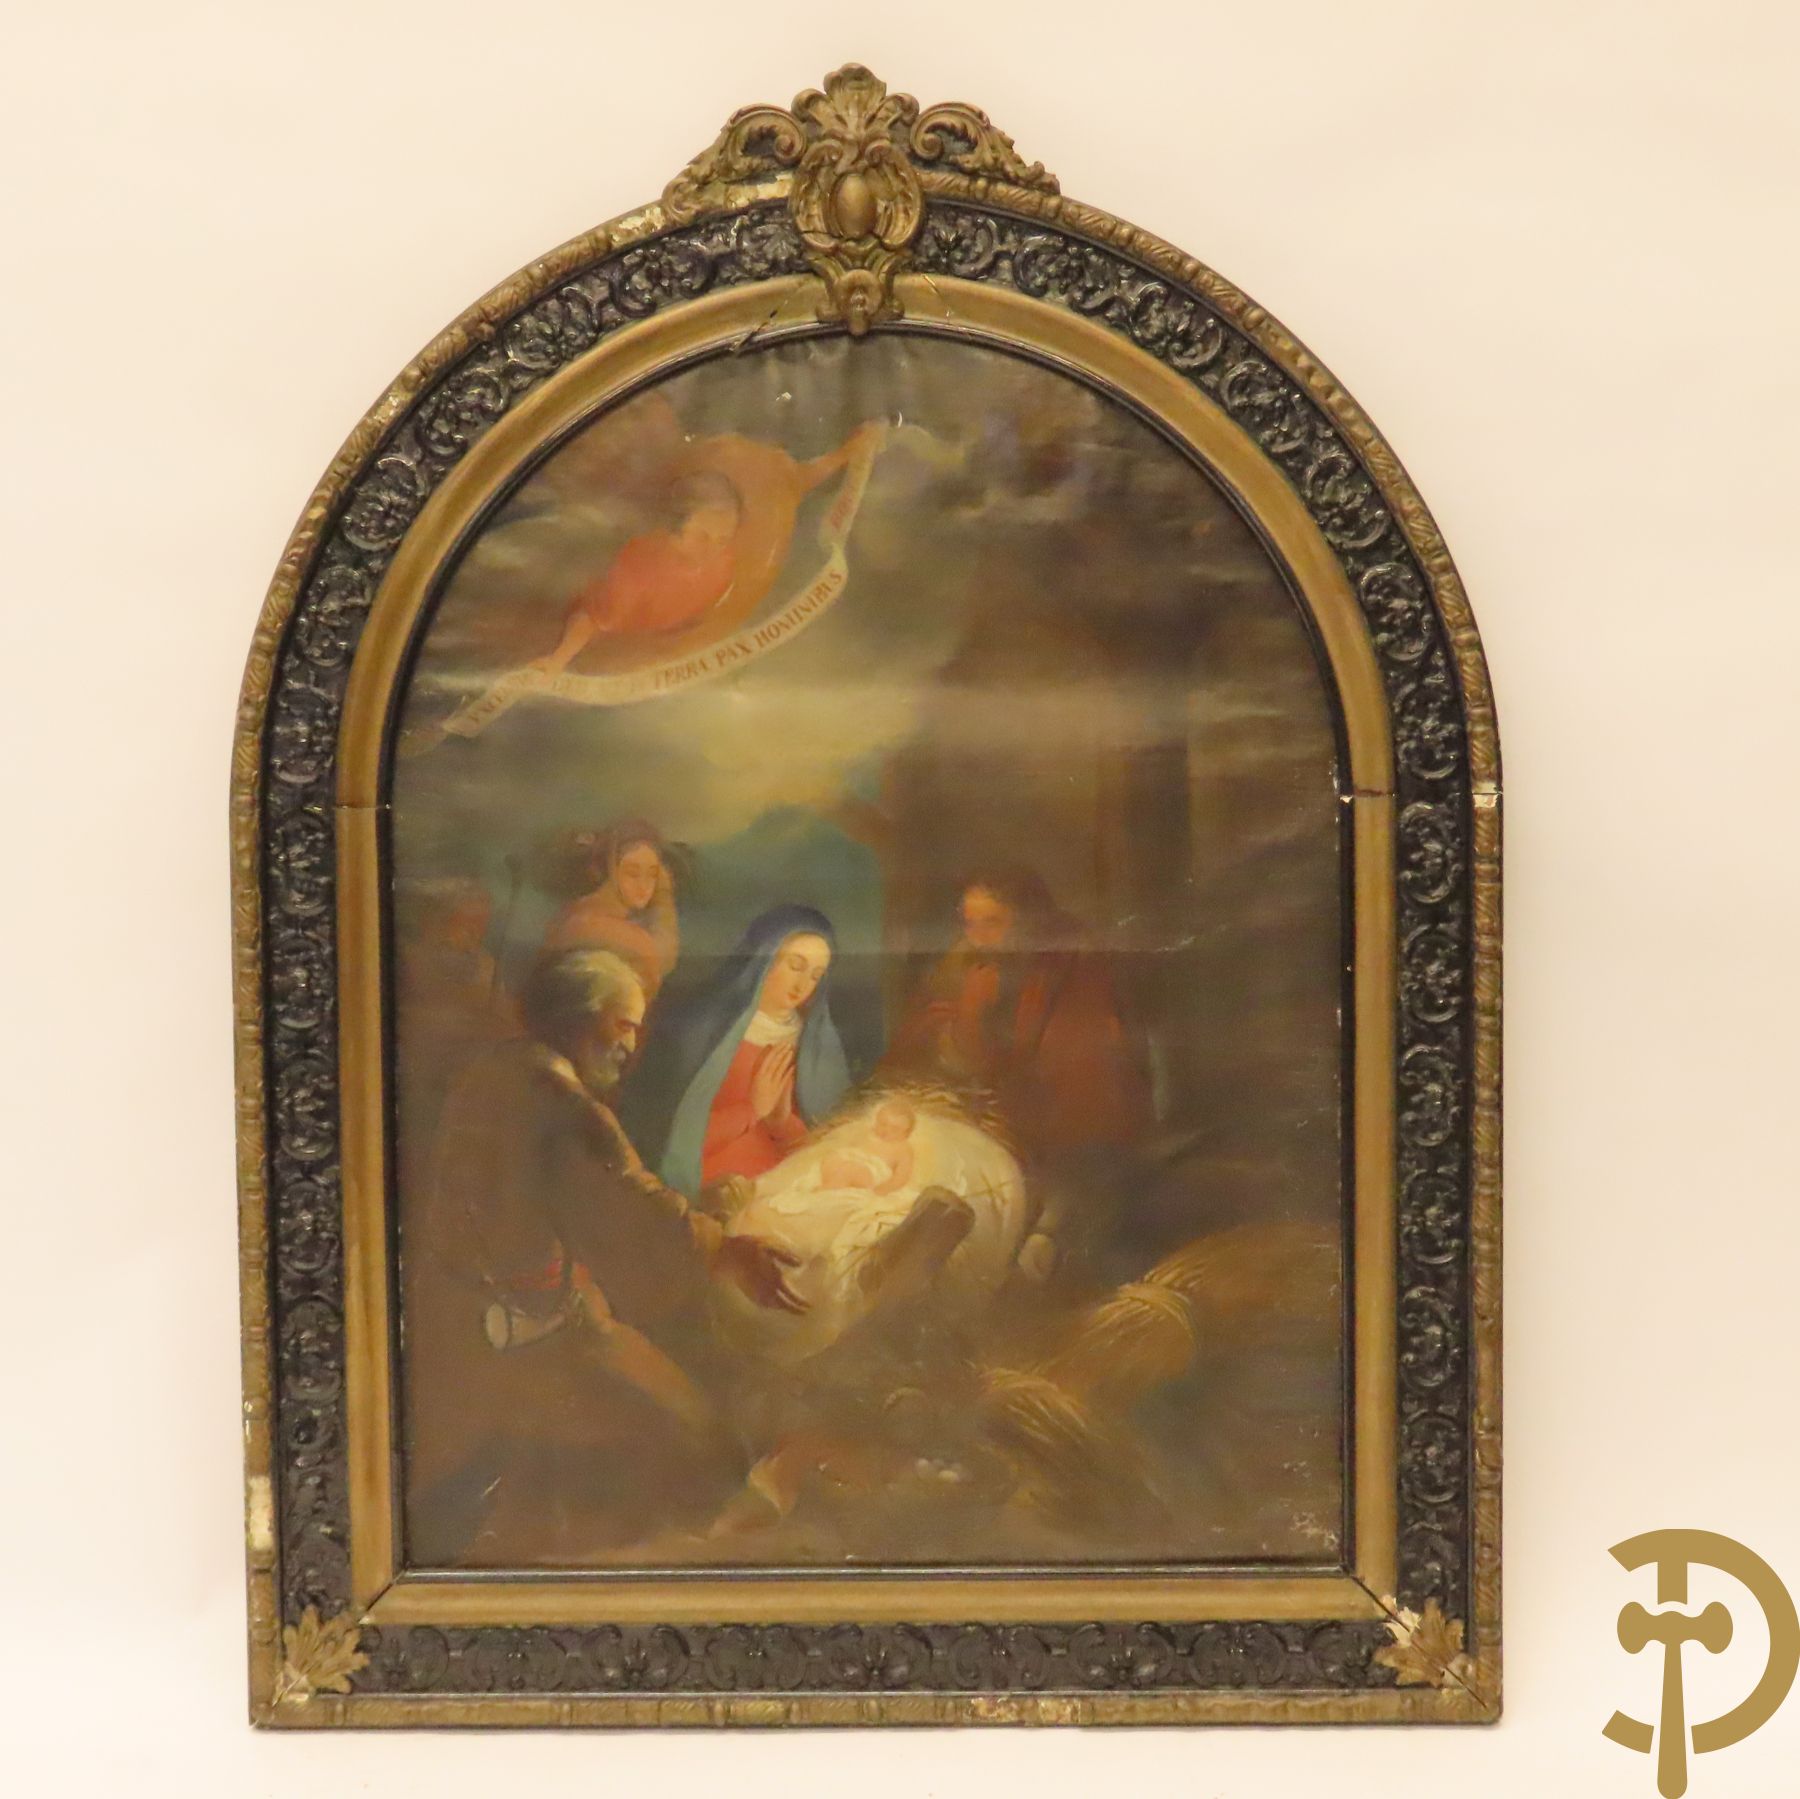 Ongetekend 'Geboorte van Christus' kapelvormige schilderij op doek in lijst met kuif